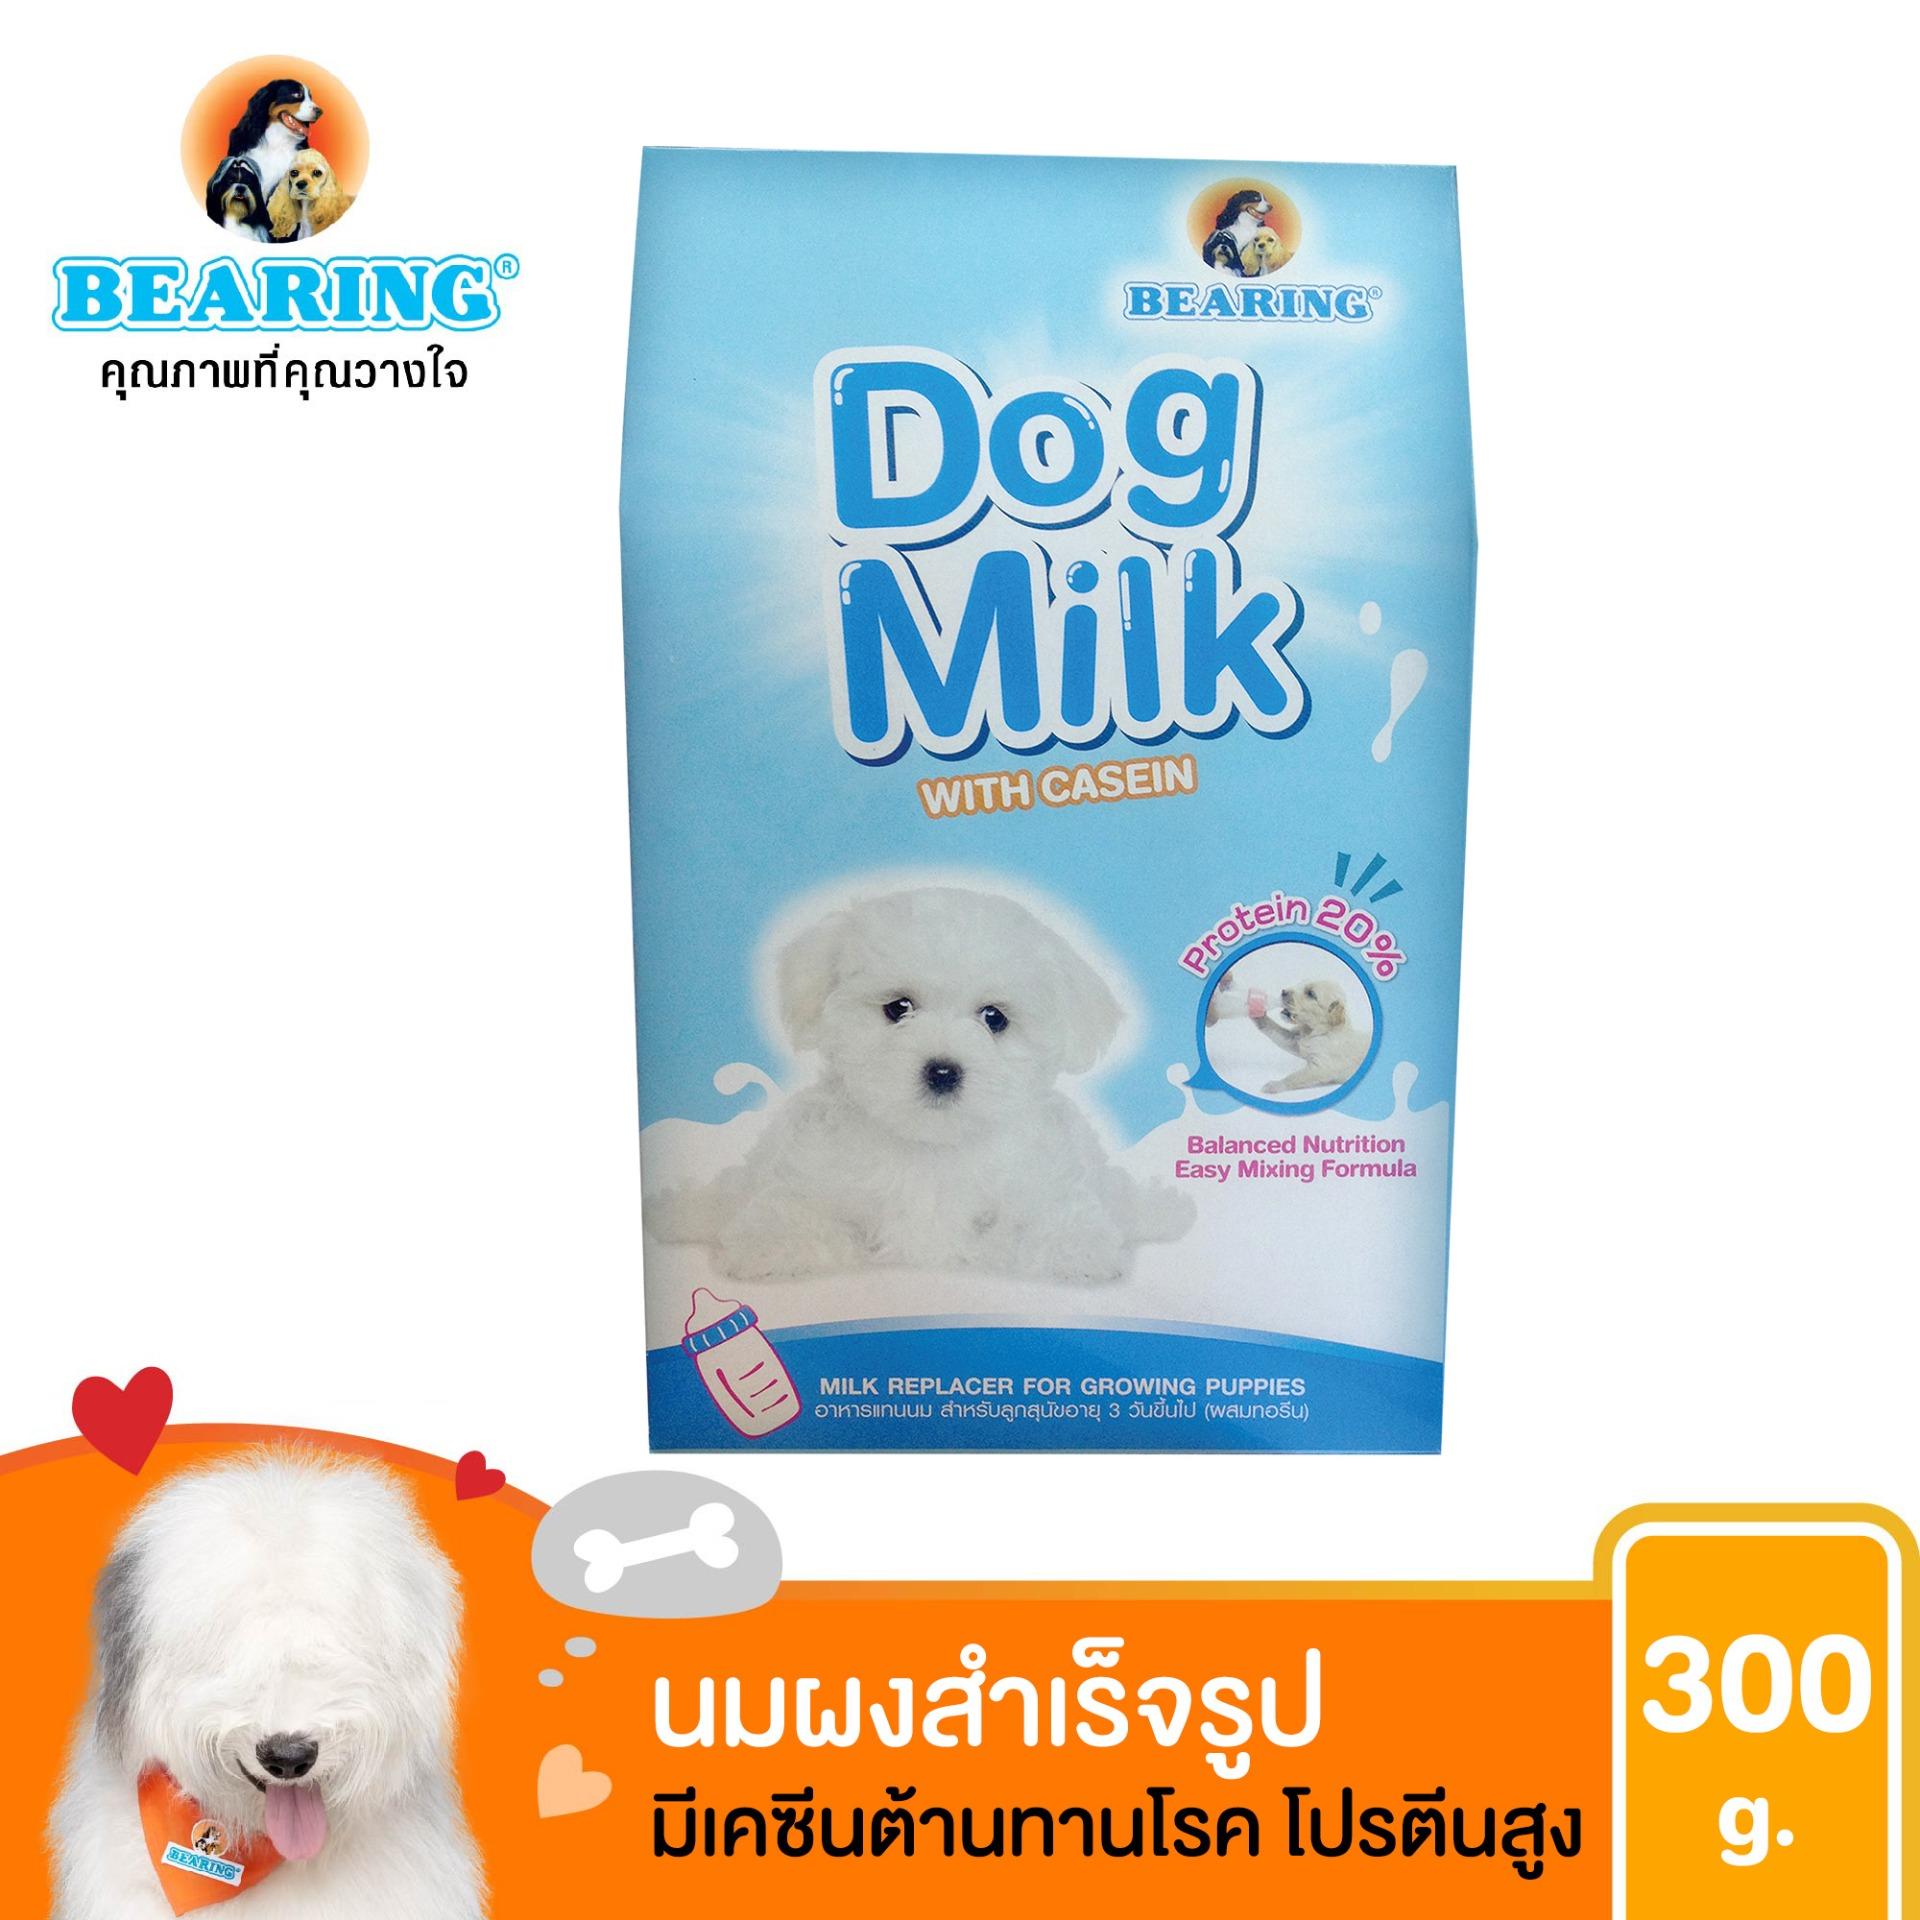 นมสุนัข นมผง สำเร็จรูปสำหรับลูกสุนัข BEARING Dog Milk with Casein 300g.